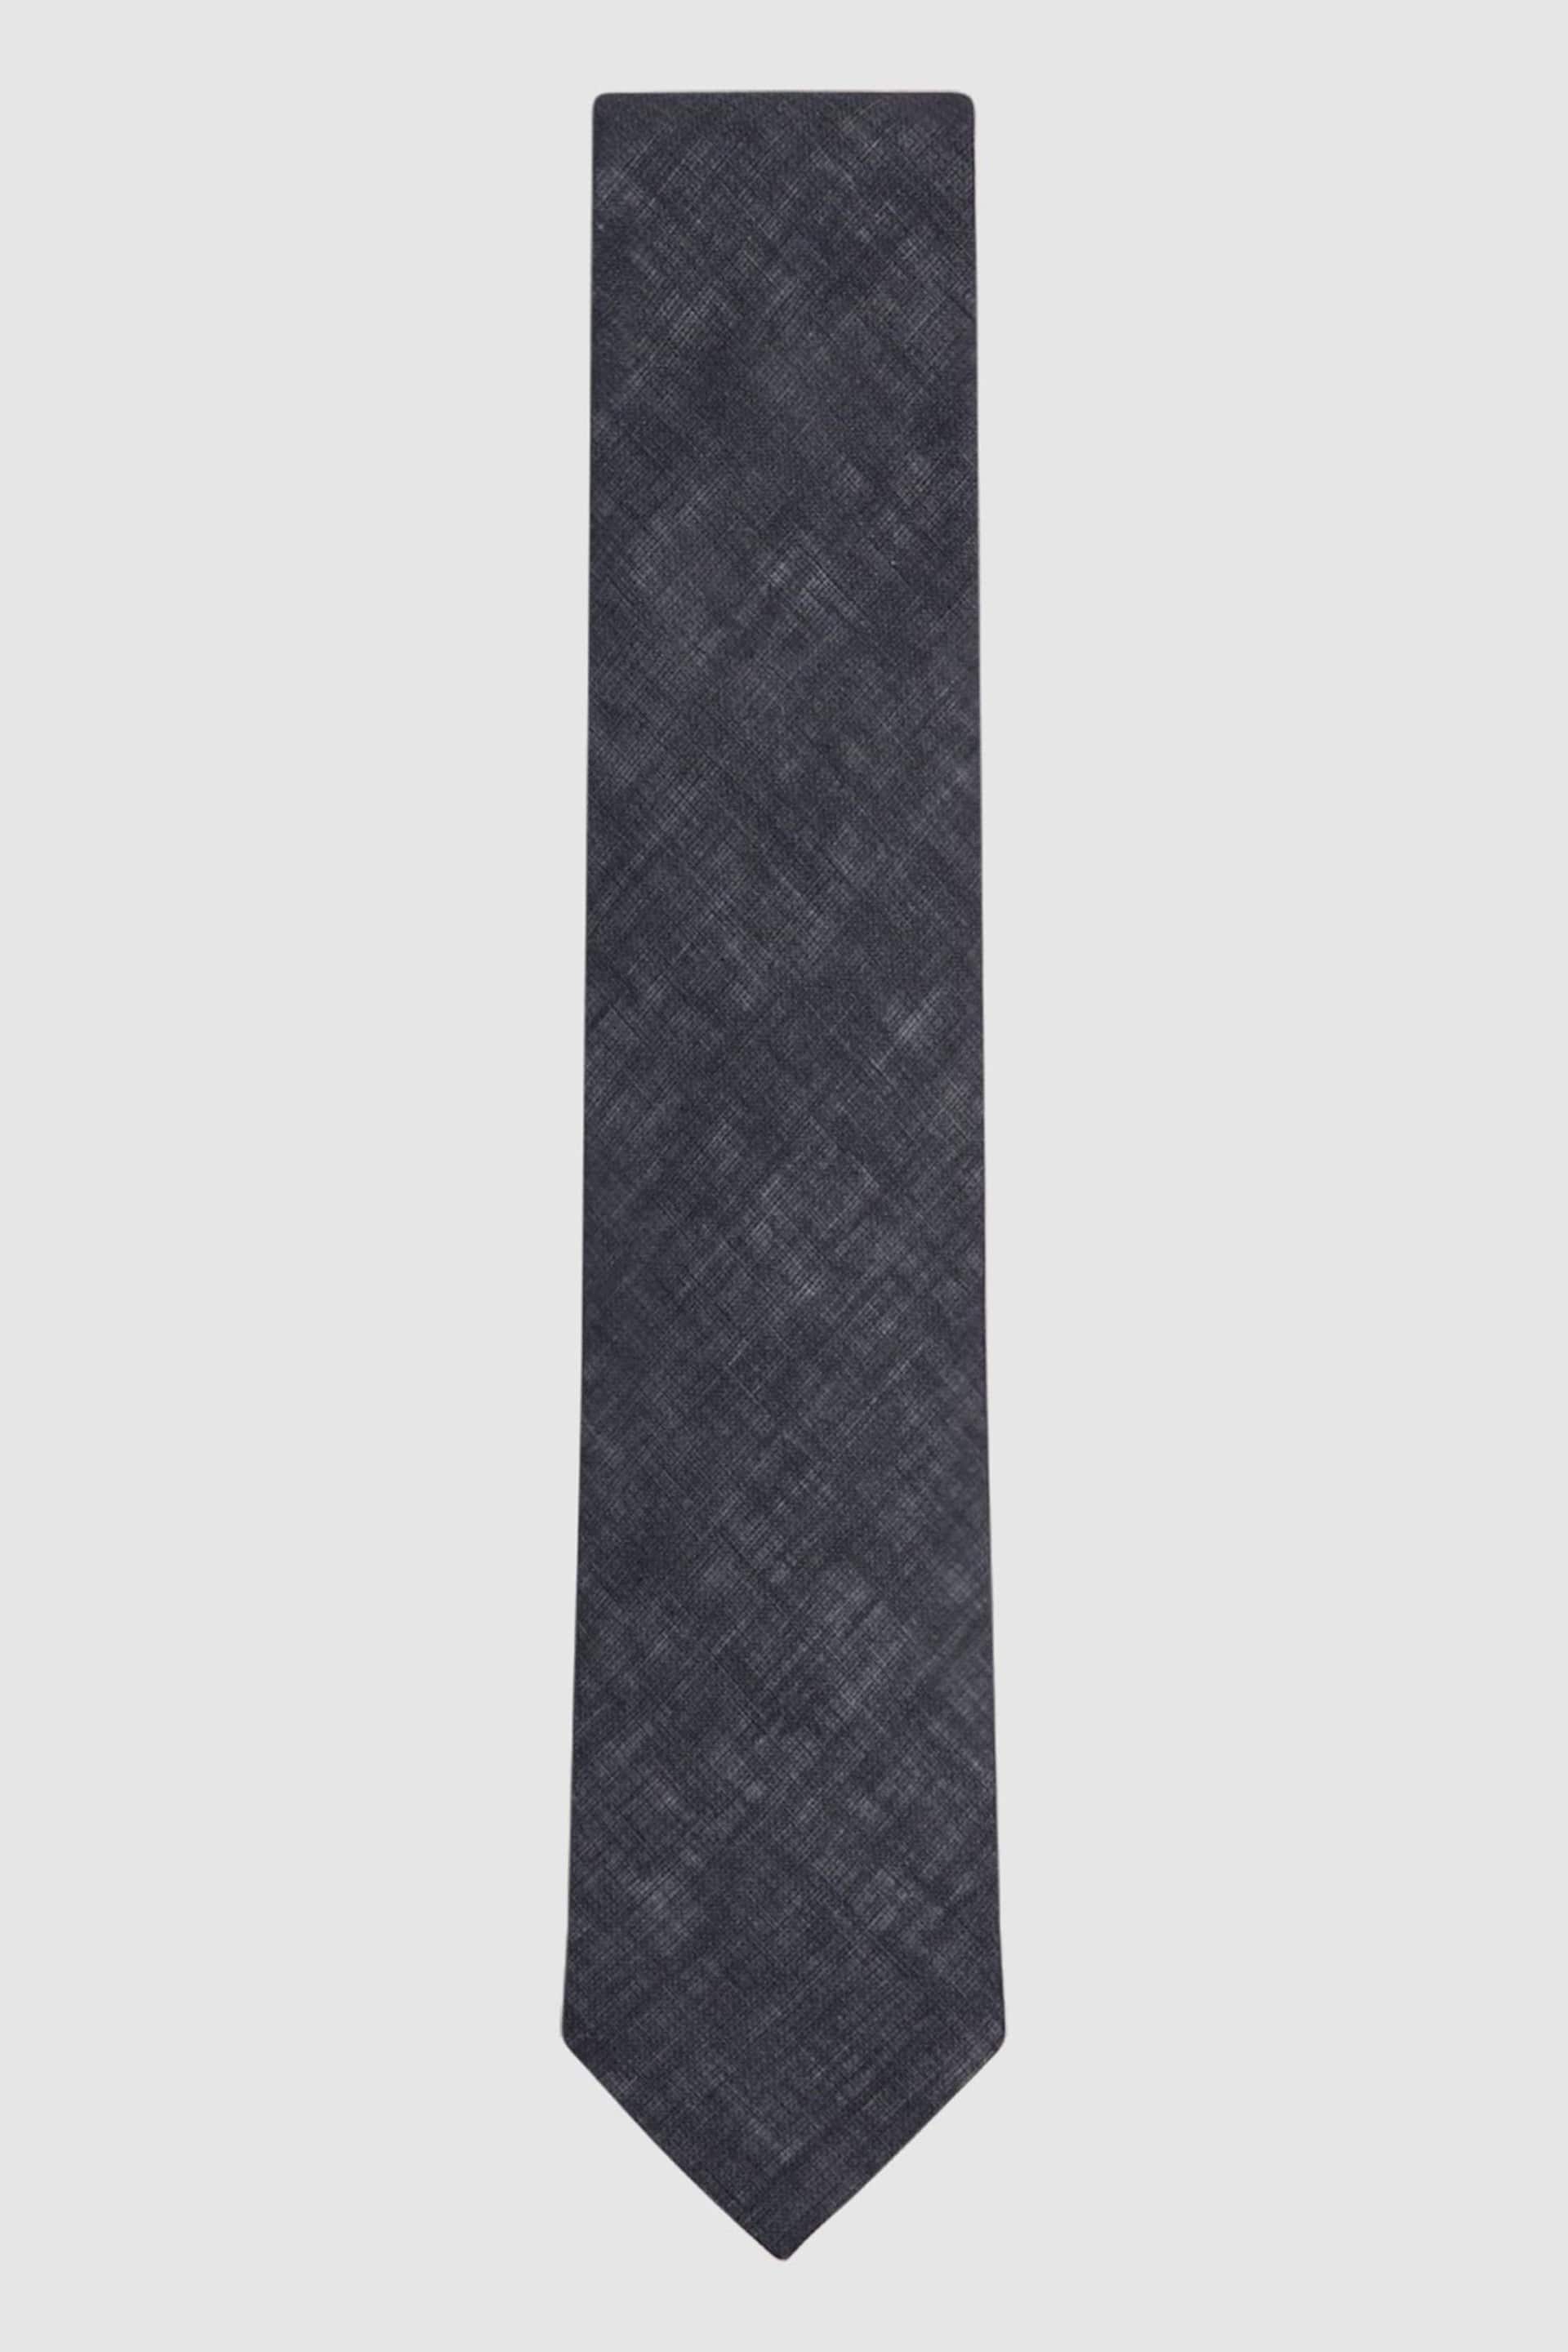 Reiss Navy Lazzaro Linen Tie - Image 1 of 5